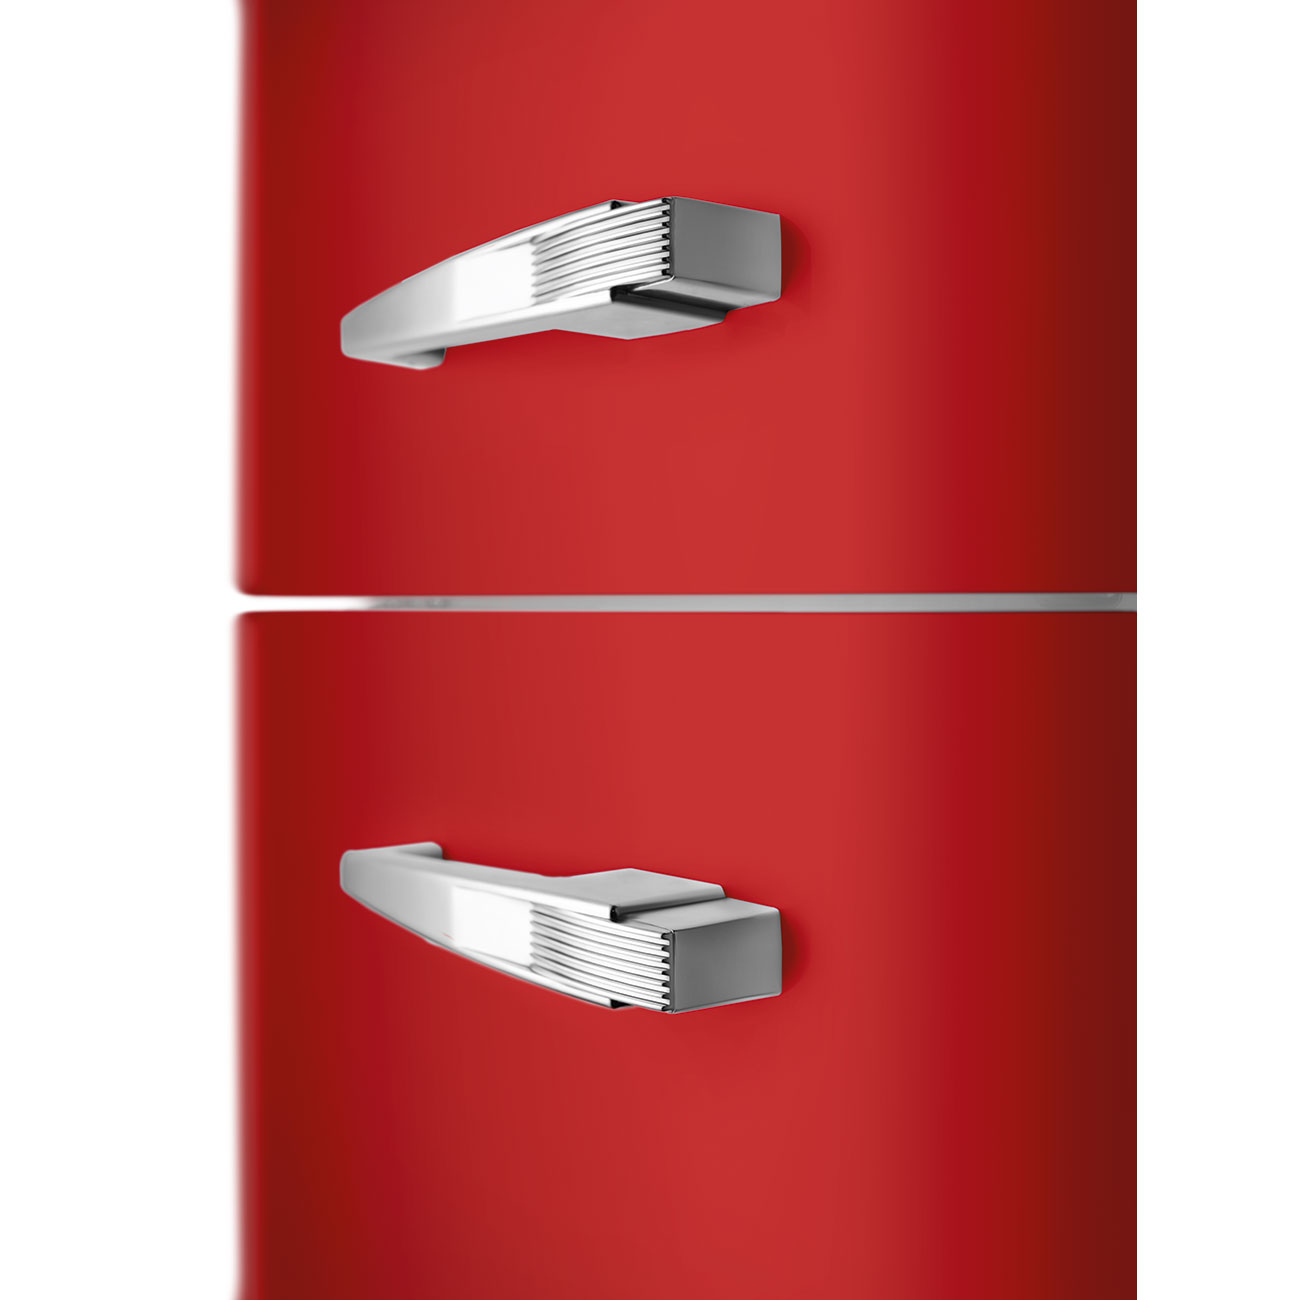 Rood koelkast - Smeg_3